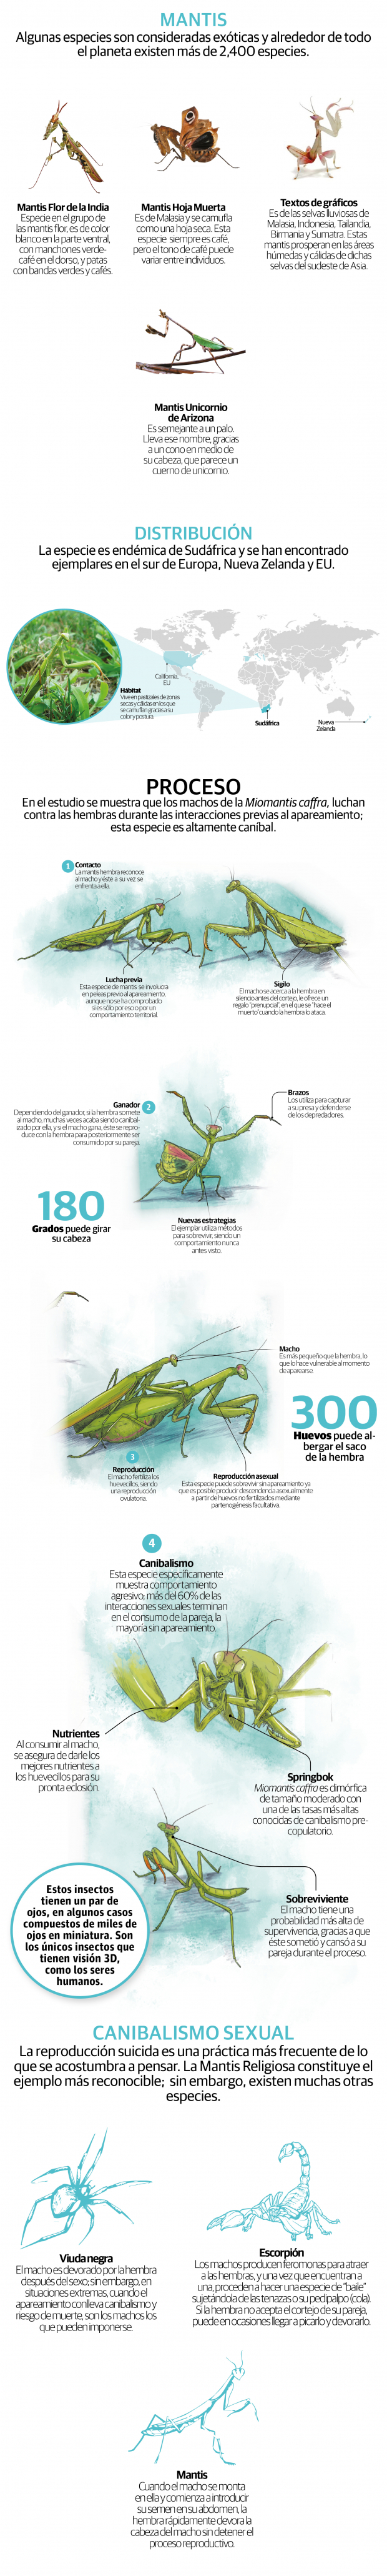 Ya no perderán la cabeza por ellas: mantis macho no se deja decapitar